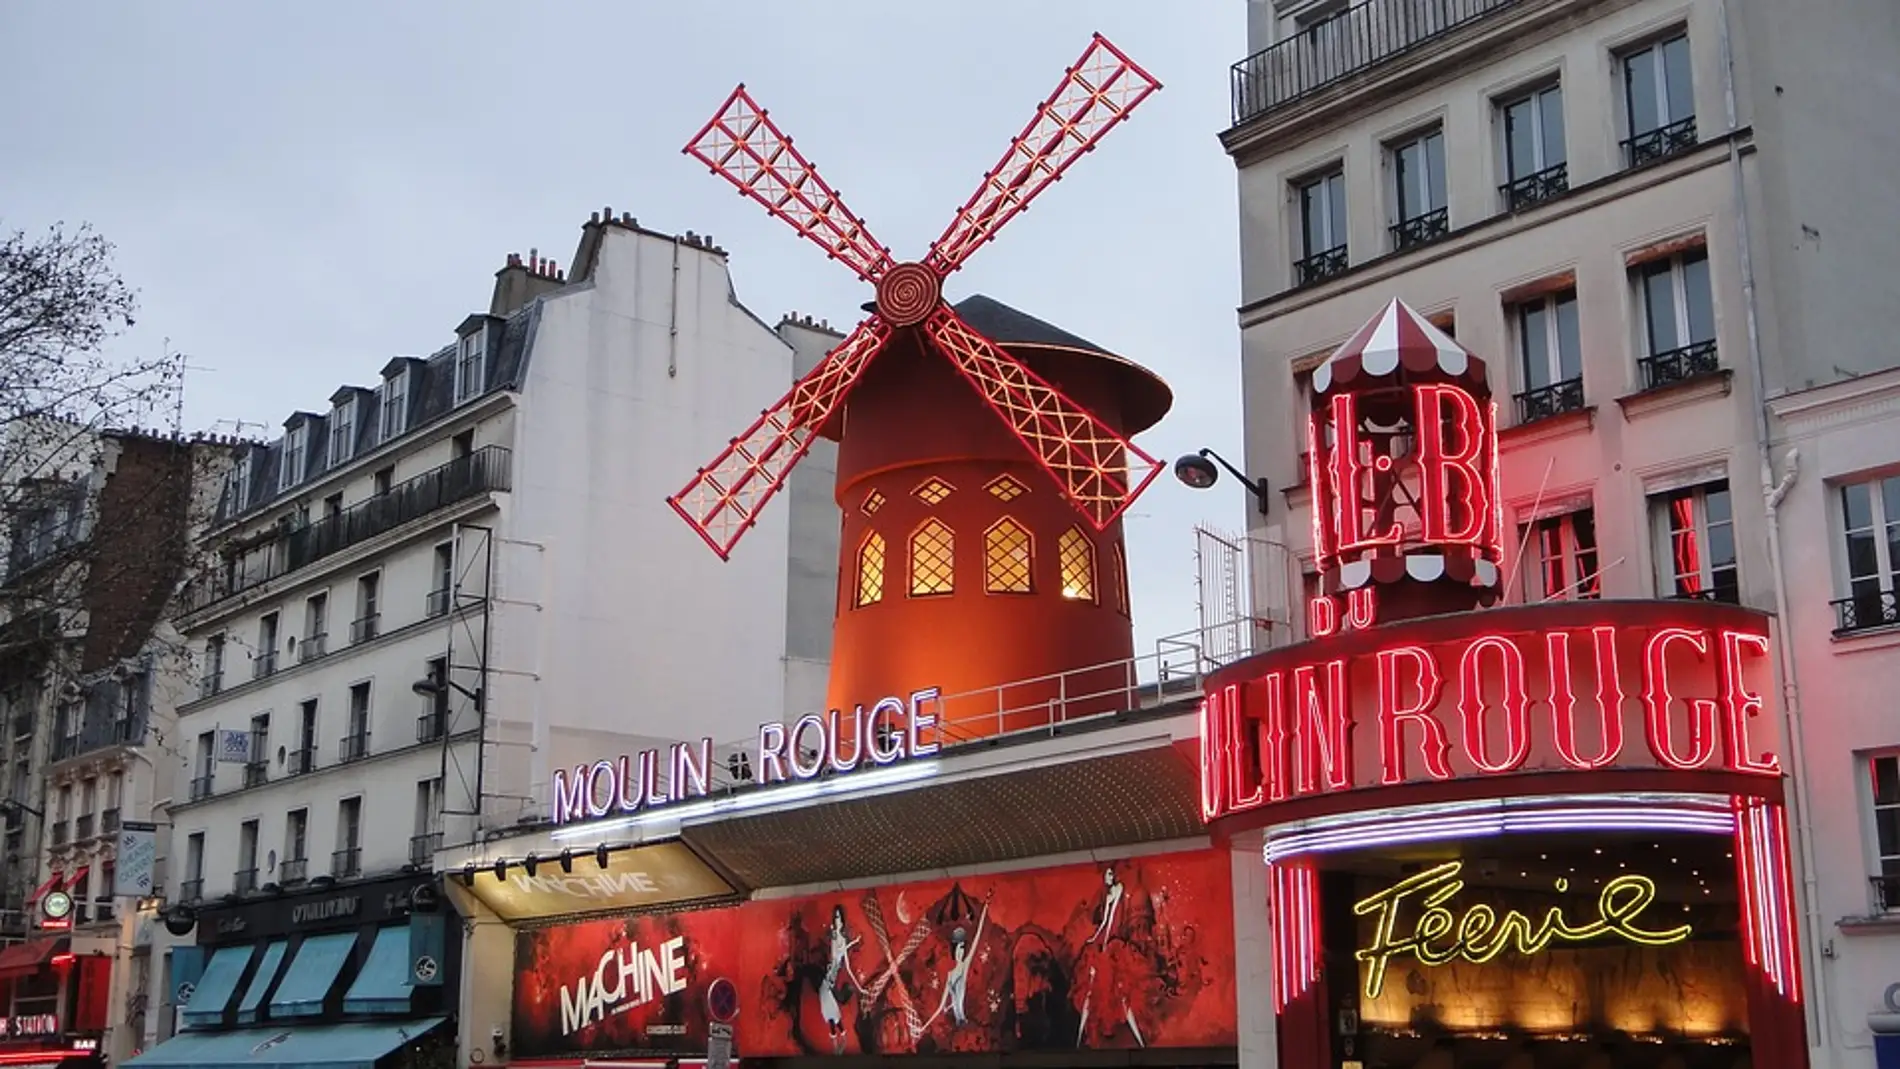 Moulin Rouge de París: 5 curiosidades que no te dejarán indiferente